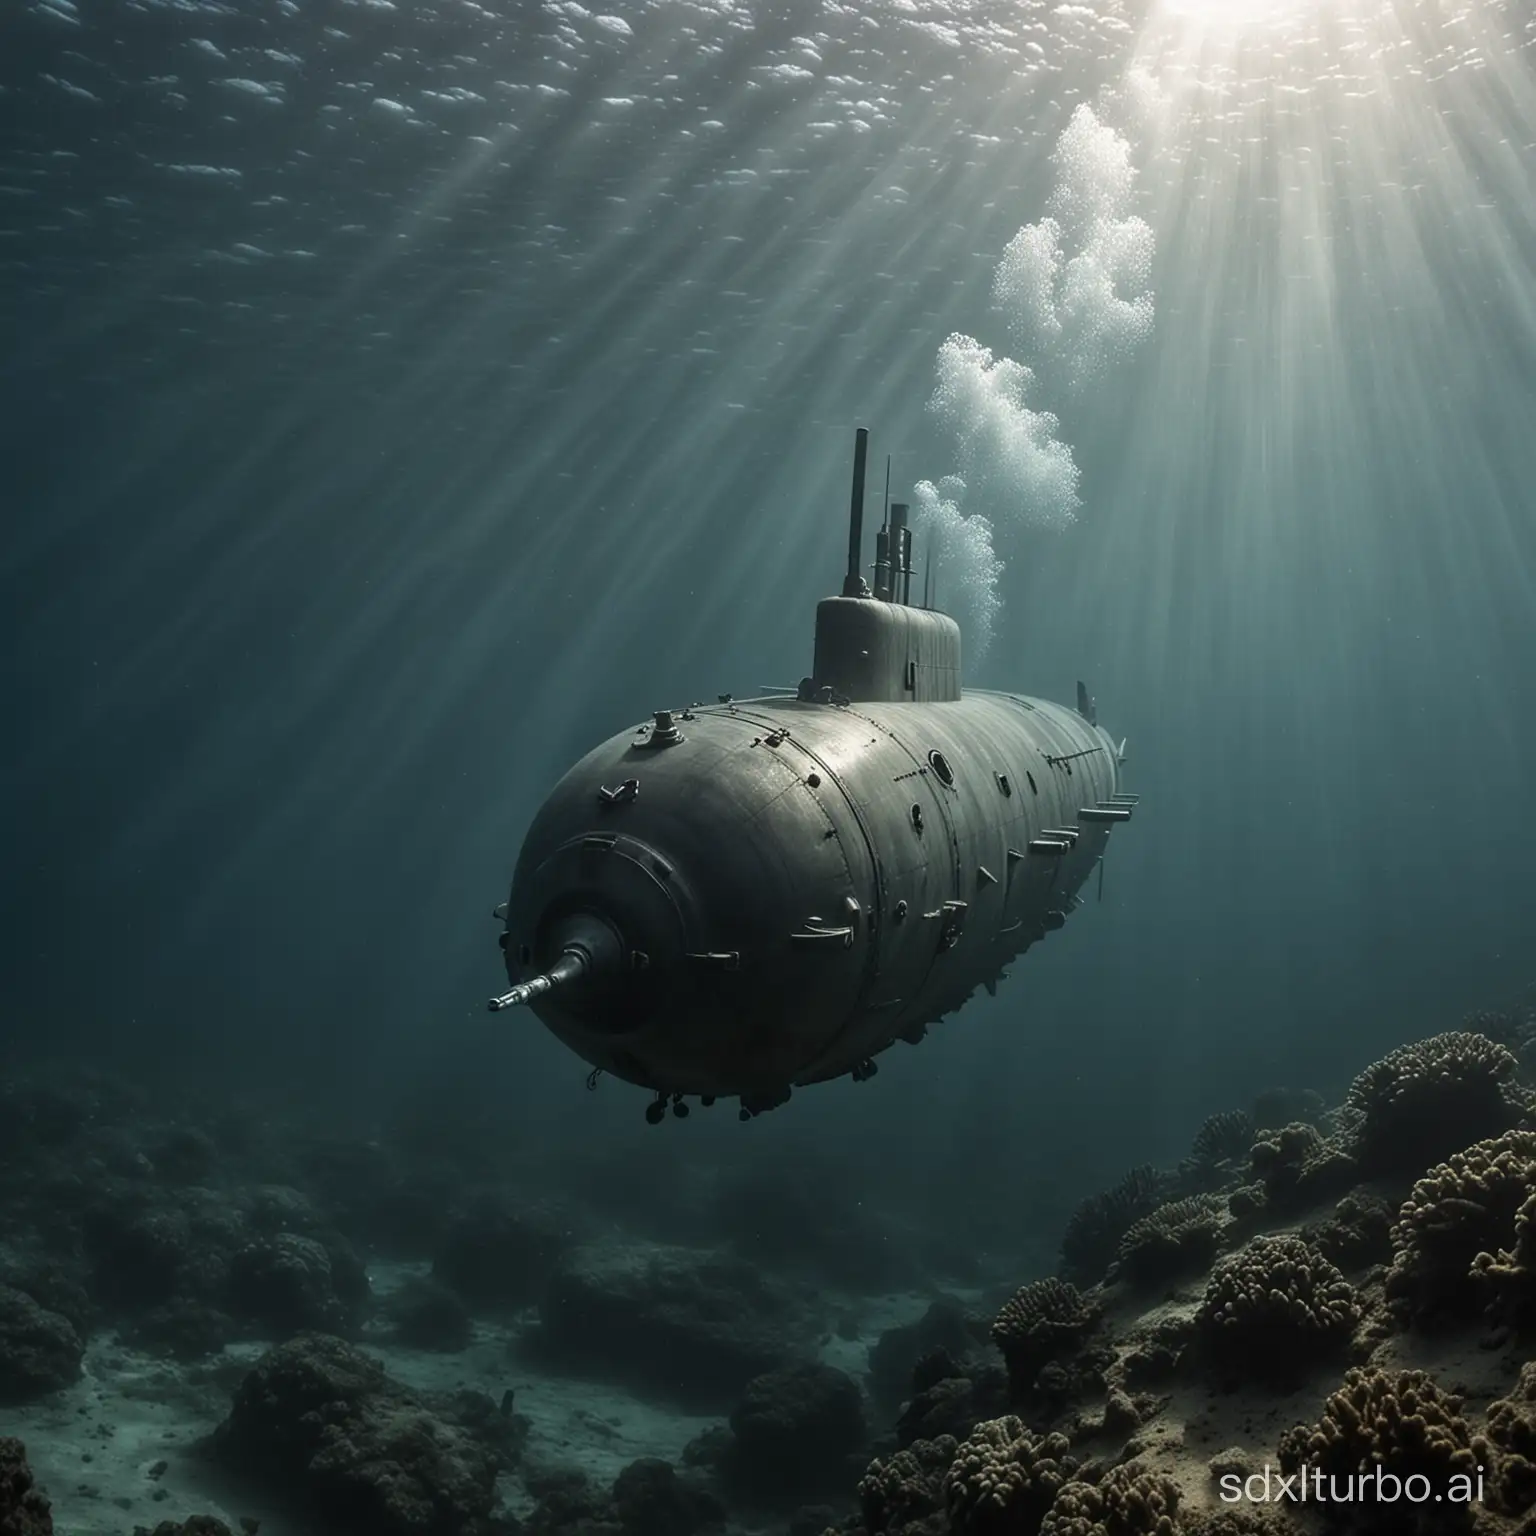 Submarine-Advancing-Underwater-in-Deep-Blue-Ocean